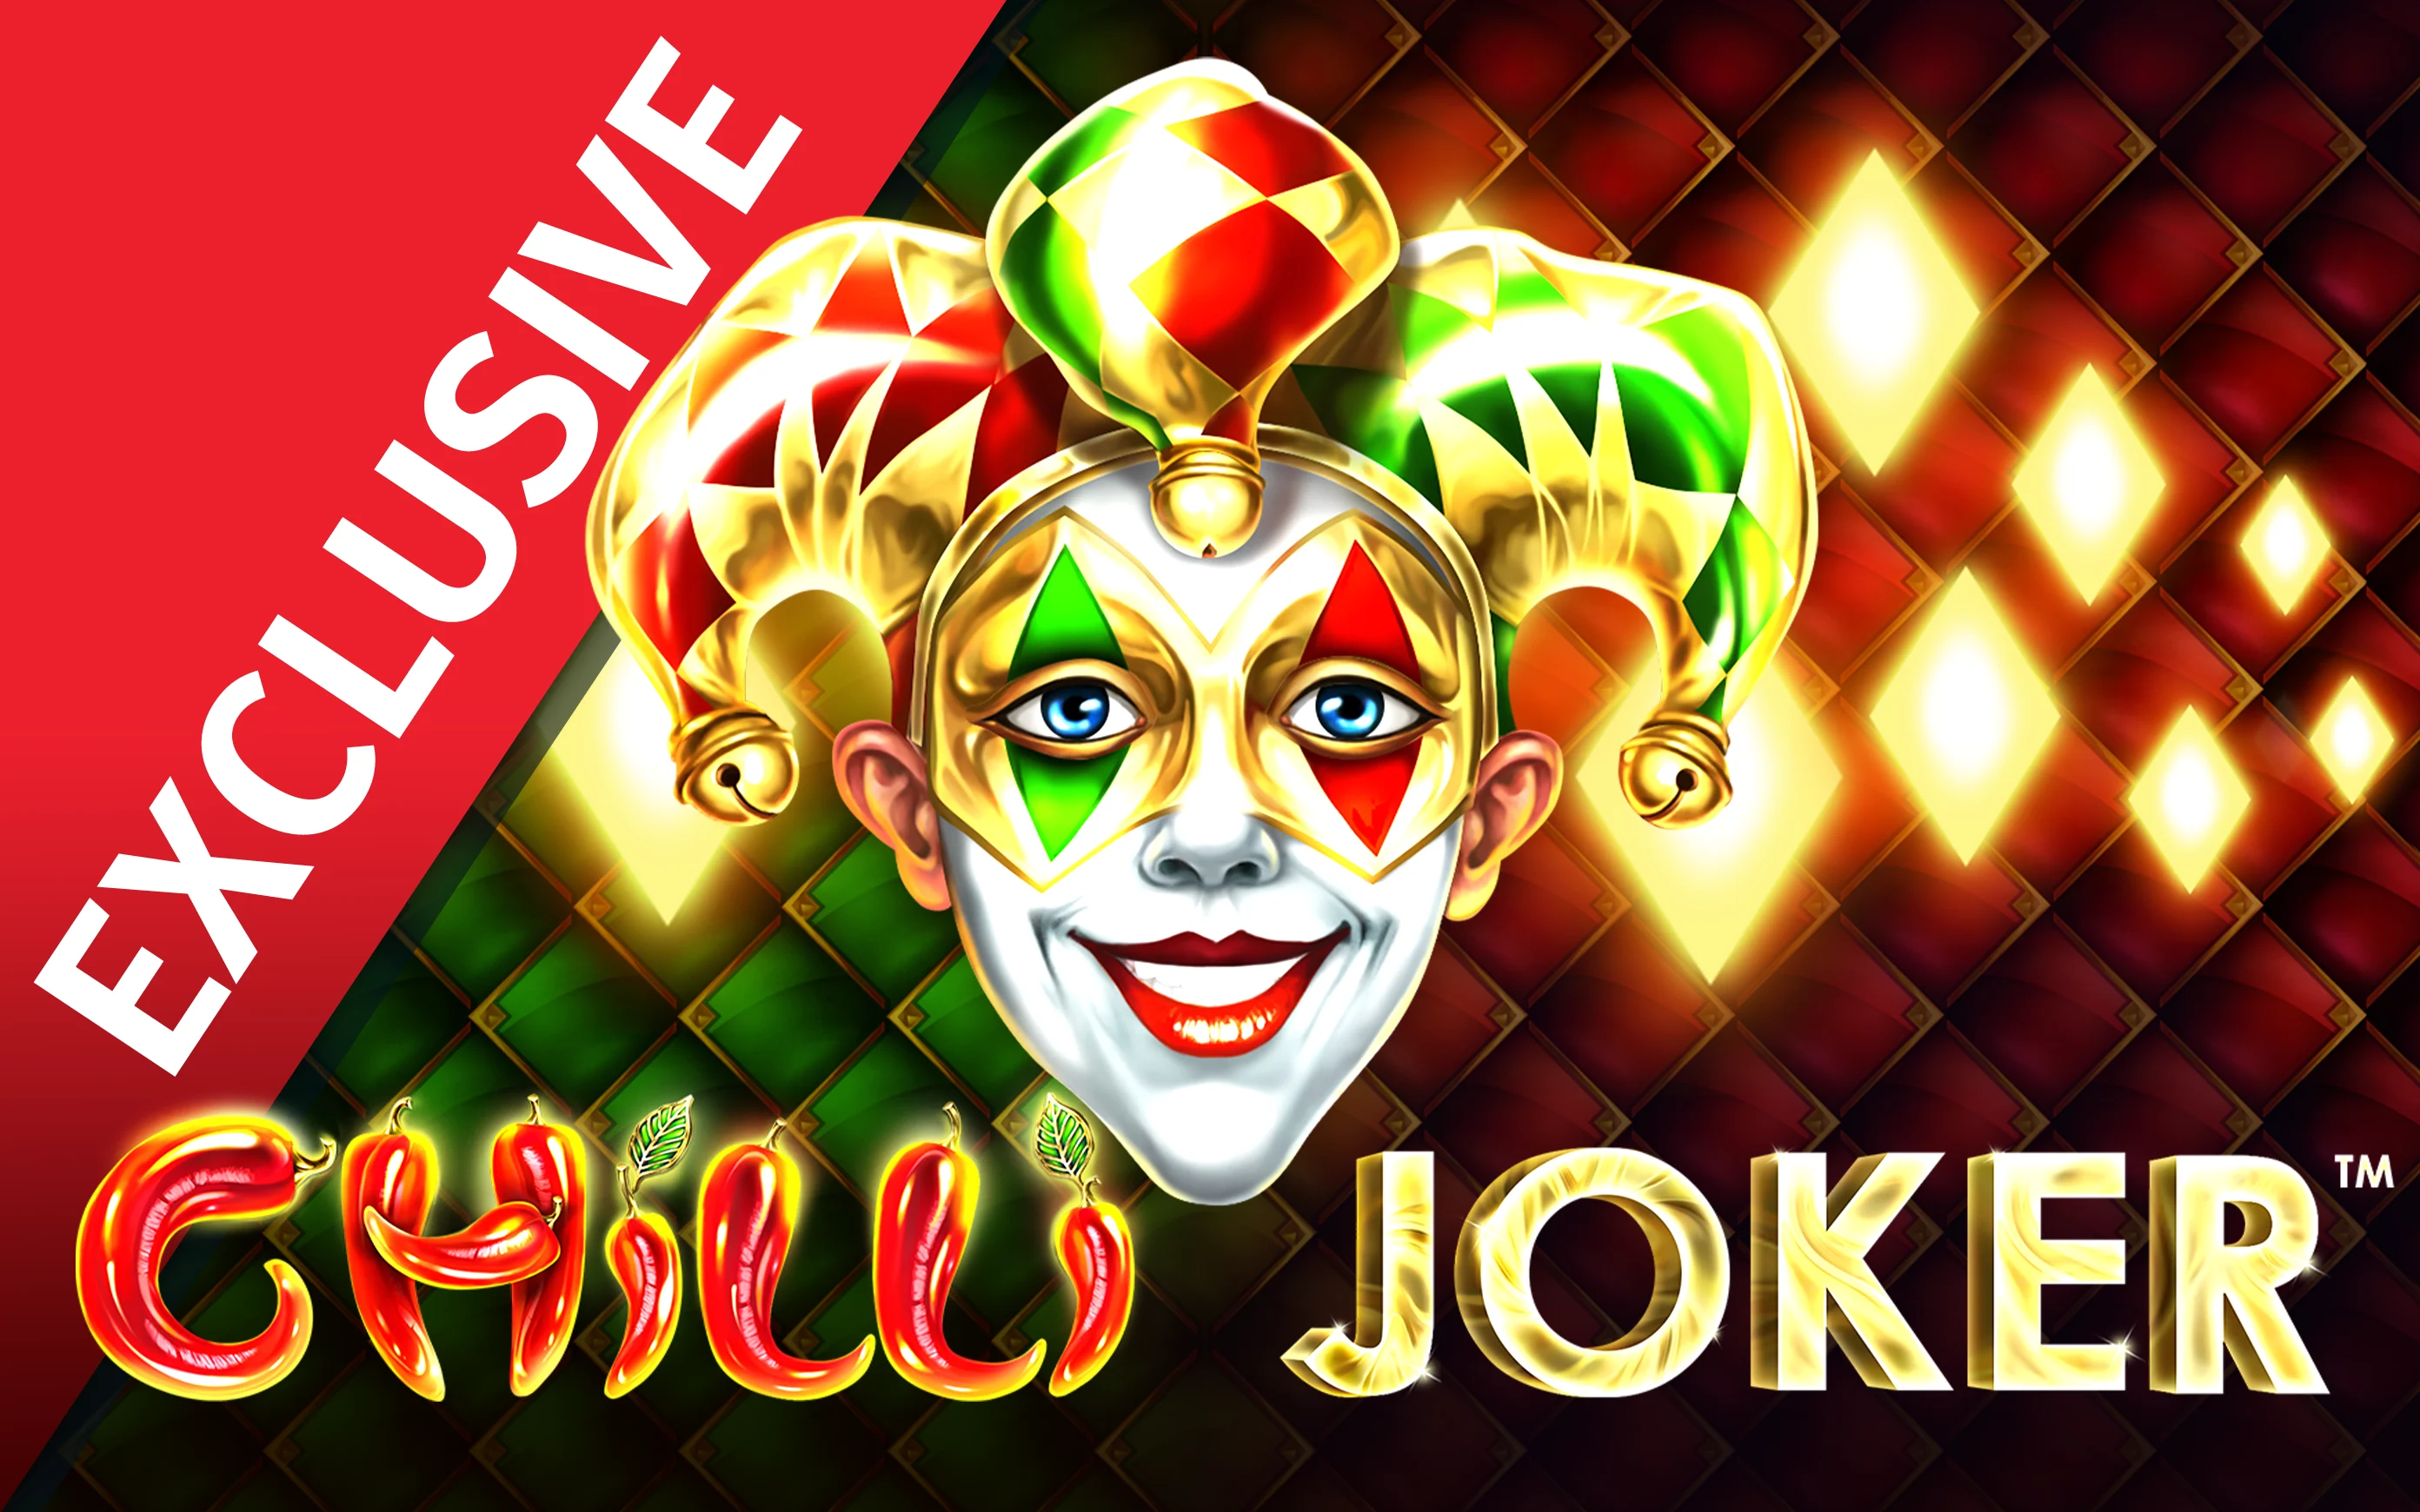 Gioca a Chilli Joker sul casino online Starcasino.be